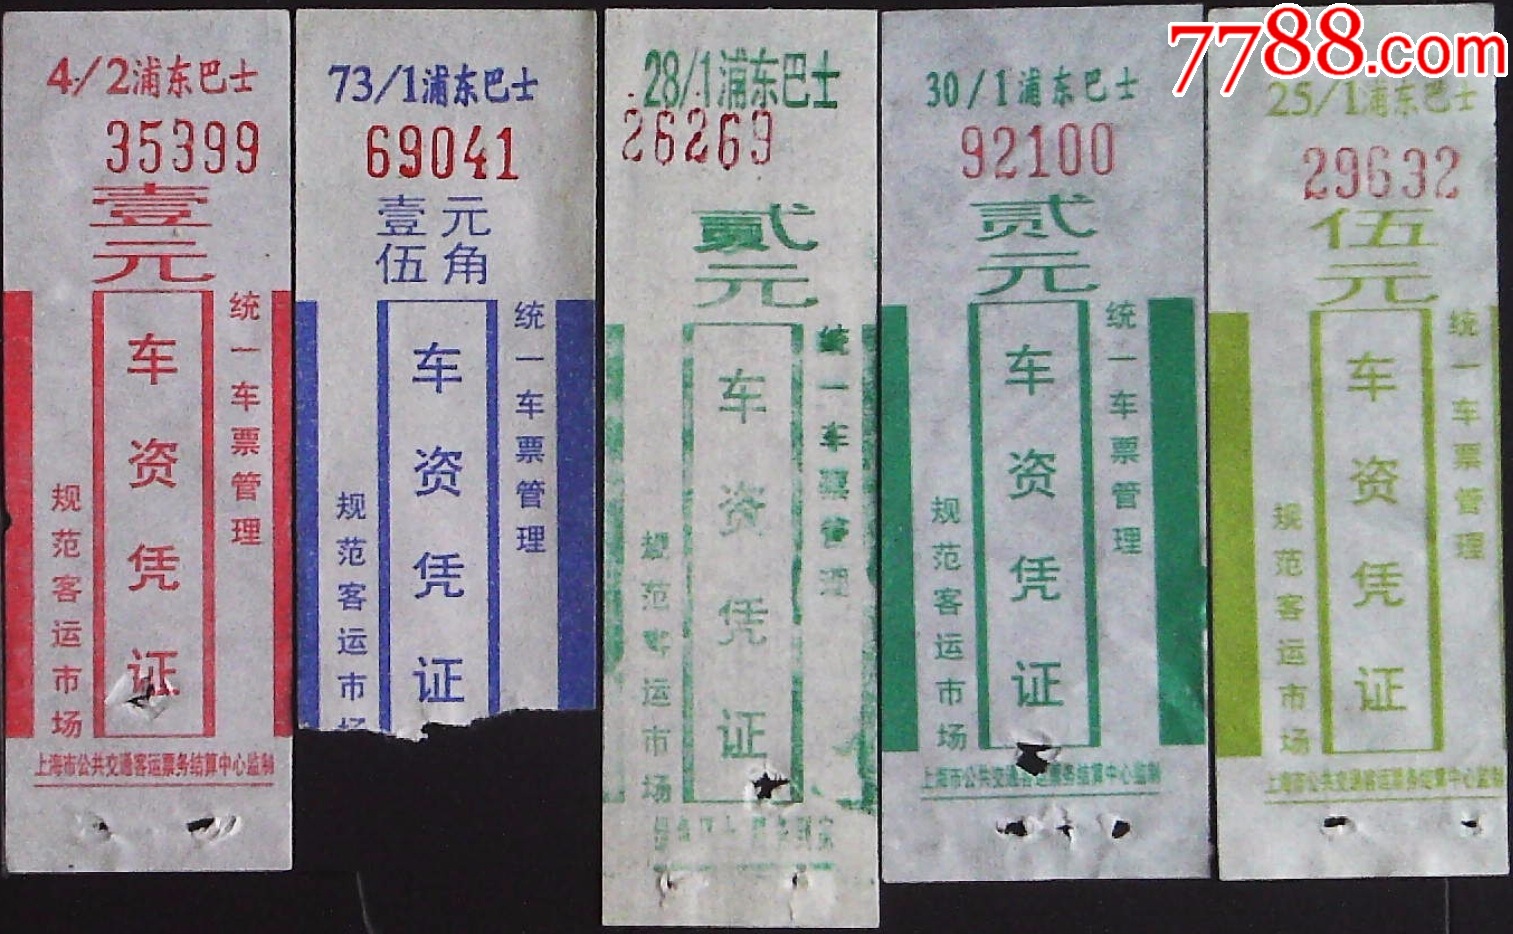 上海市公共汽车月票缴款赁证-价格:35元-se89649907-汽车票-零售-7788收藏__收藏热线